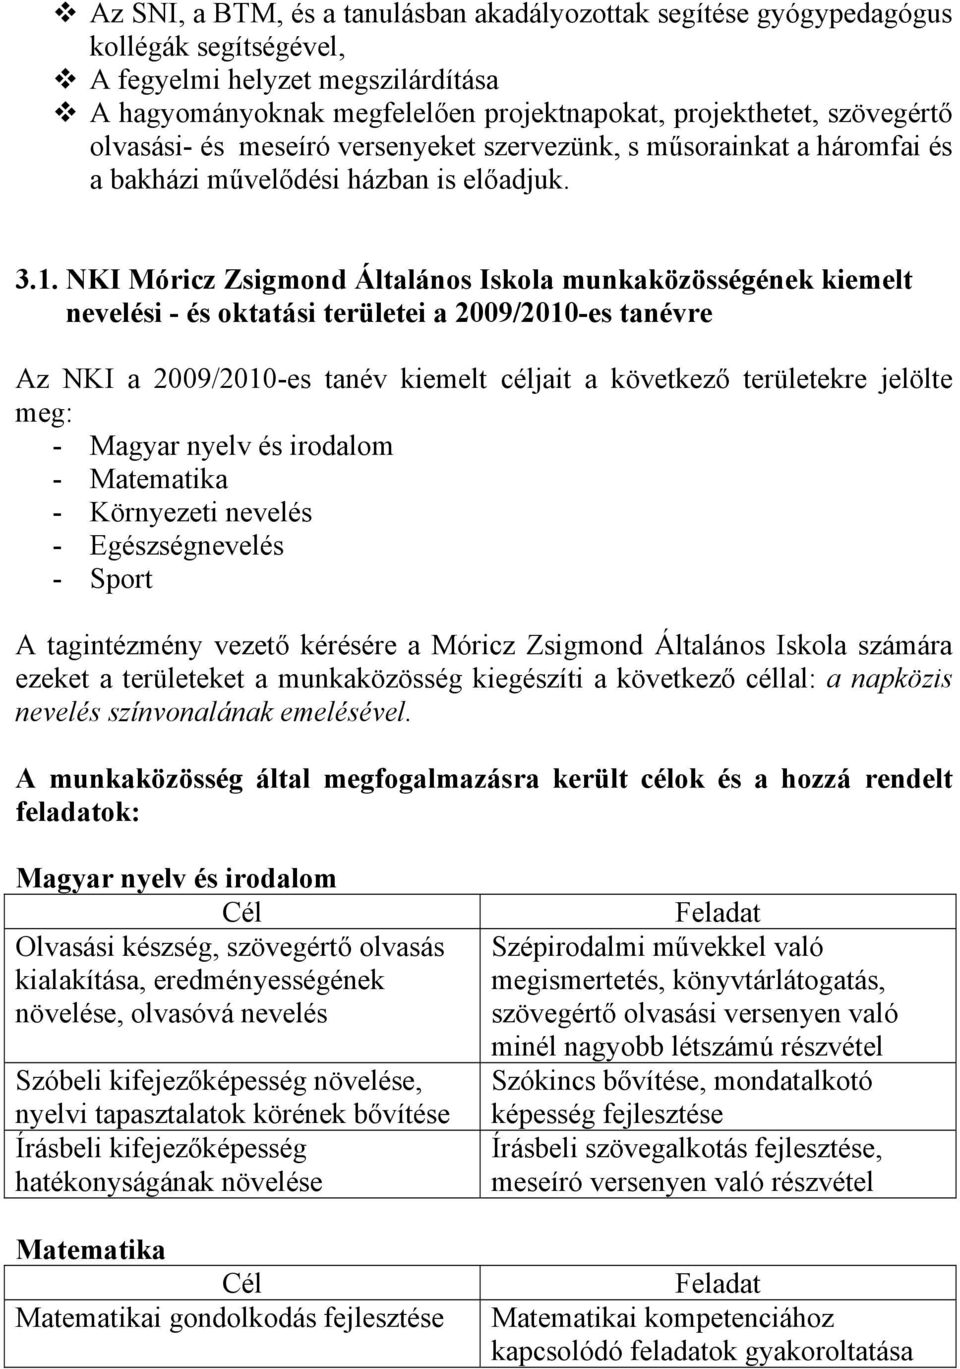 NKI Móricz Zsigmond Általános Iskola munkaközösségének kiemelt nevelési - és oktatási területei a 2009/2010-es tanévre Az NKI a 2009/2010-es tanév kiemelt céljait a következő területekre jelölte meg: